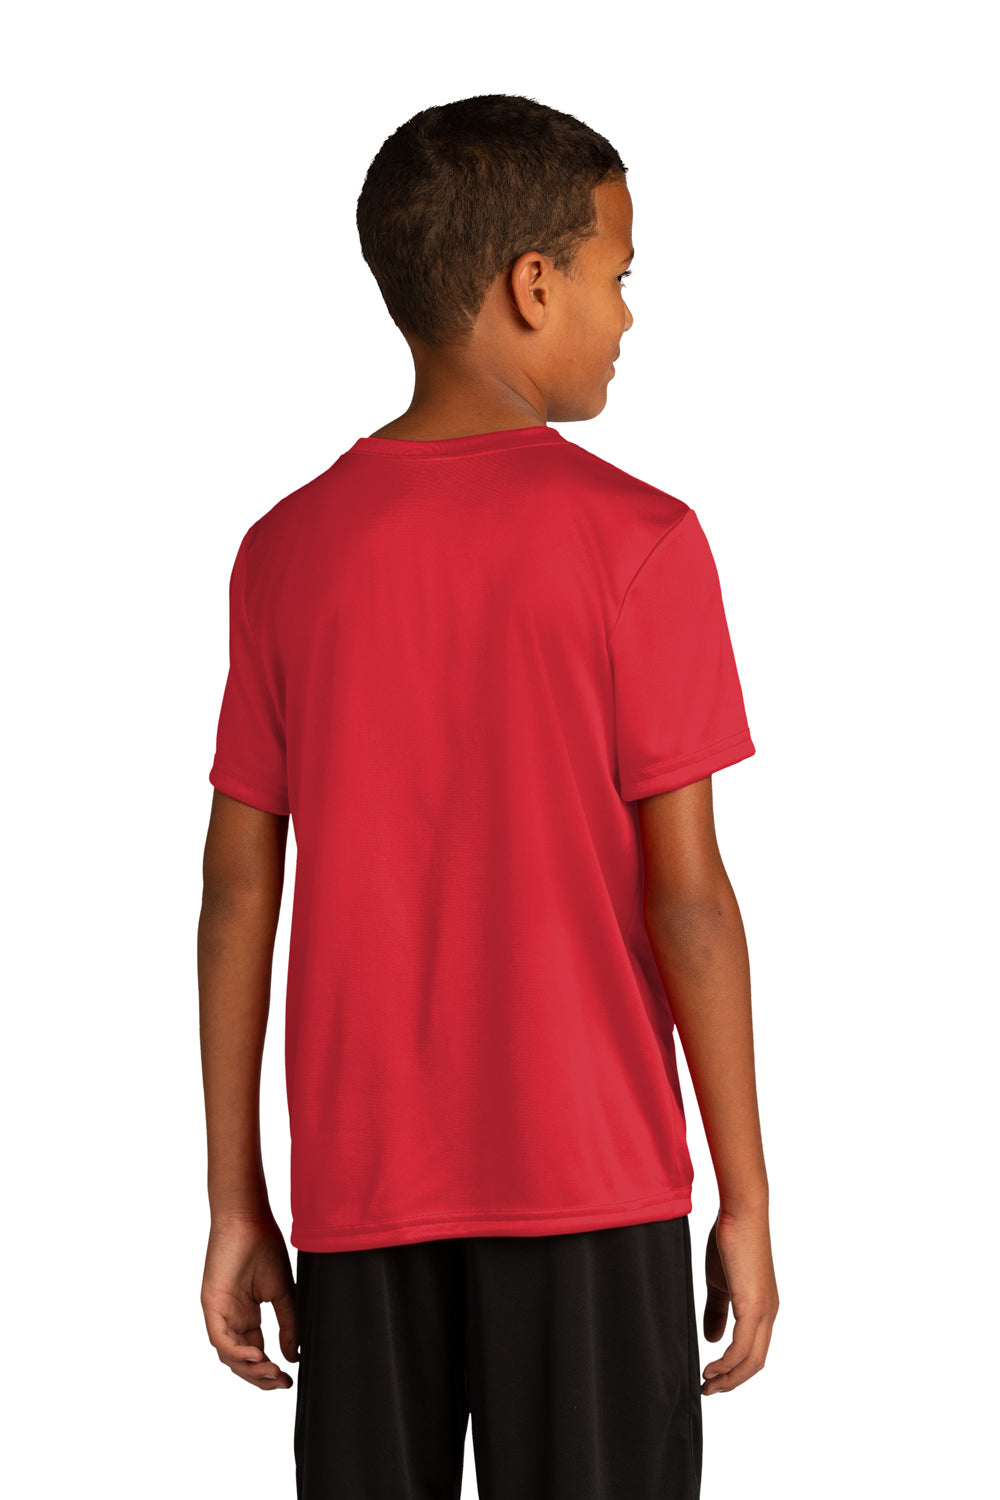 Sport-Tek YST720 Re-Compete PosiCharge Short Sleeve Crewneck T-Shirt True Red Back